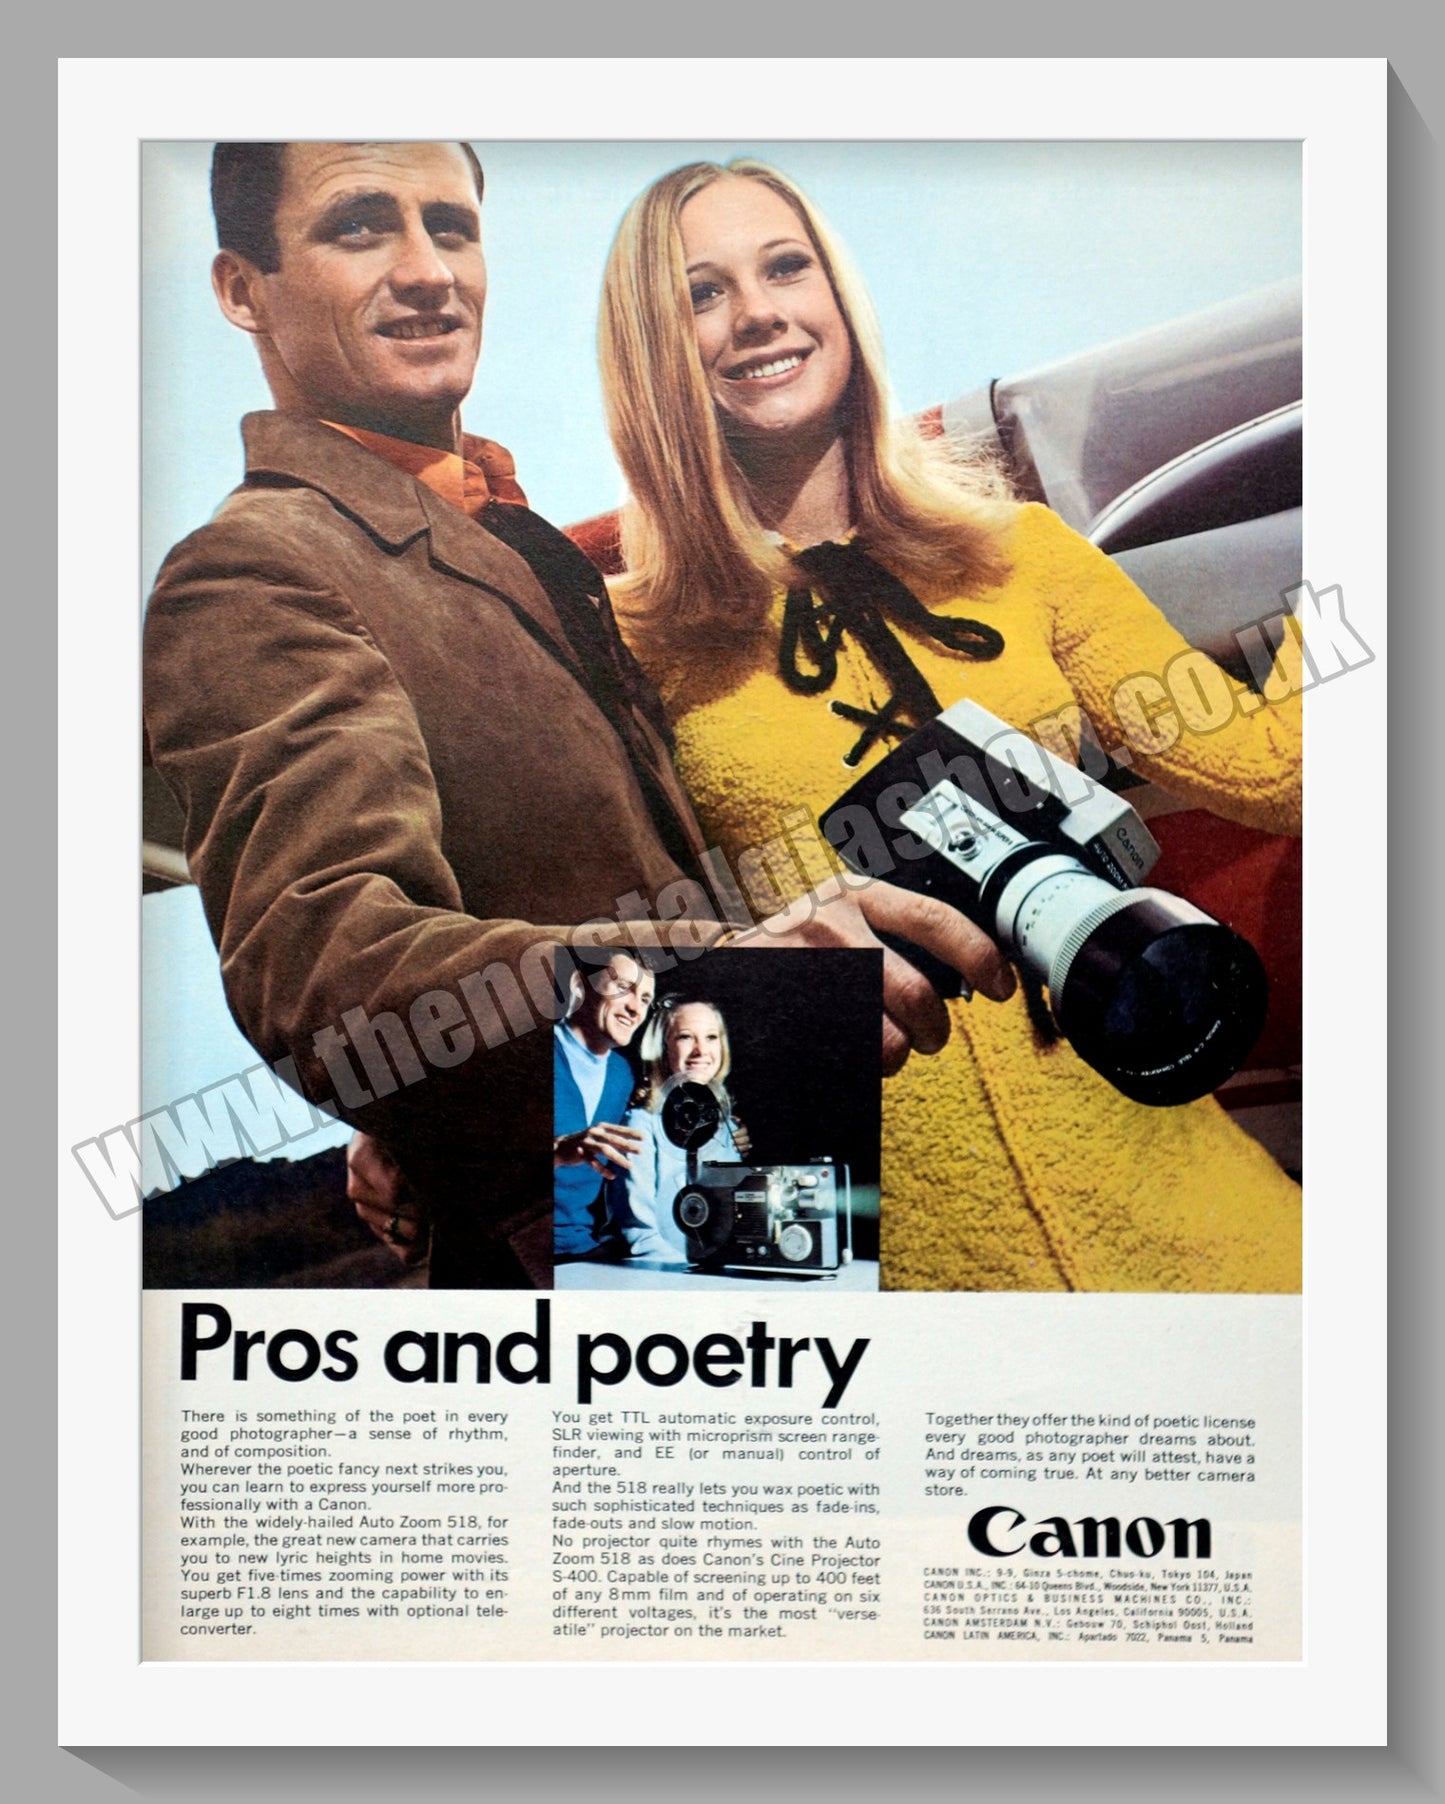 Canon Auto Zoom 518 Camera. Original Advert 1970 (ref AD300600)